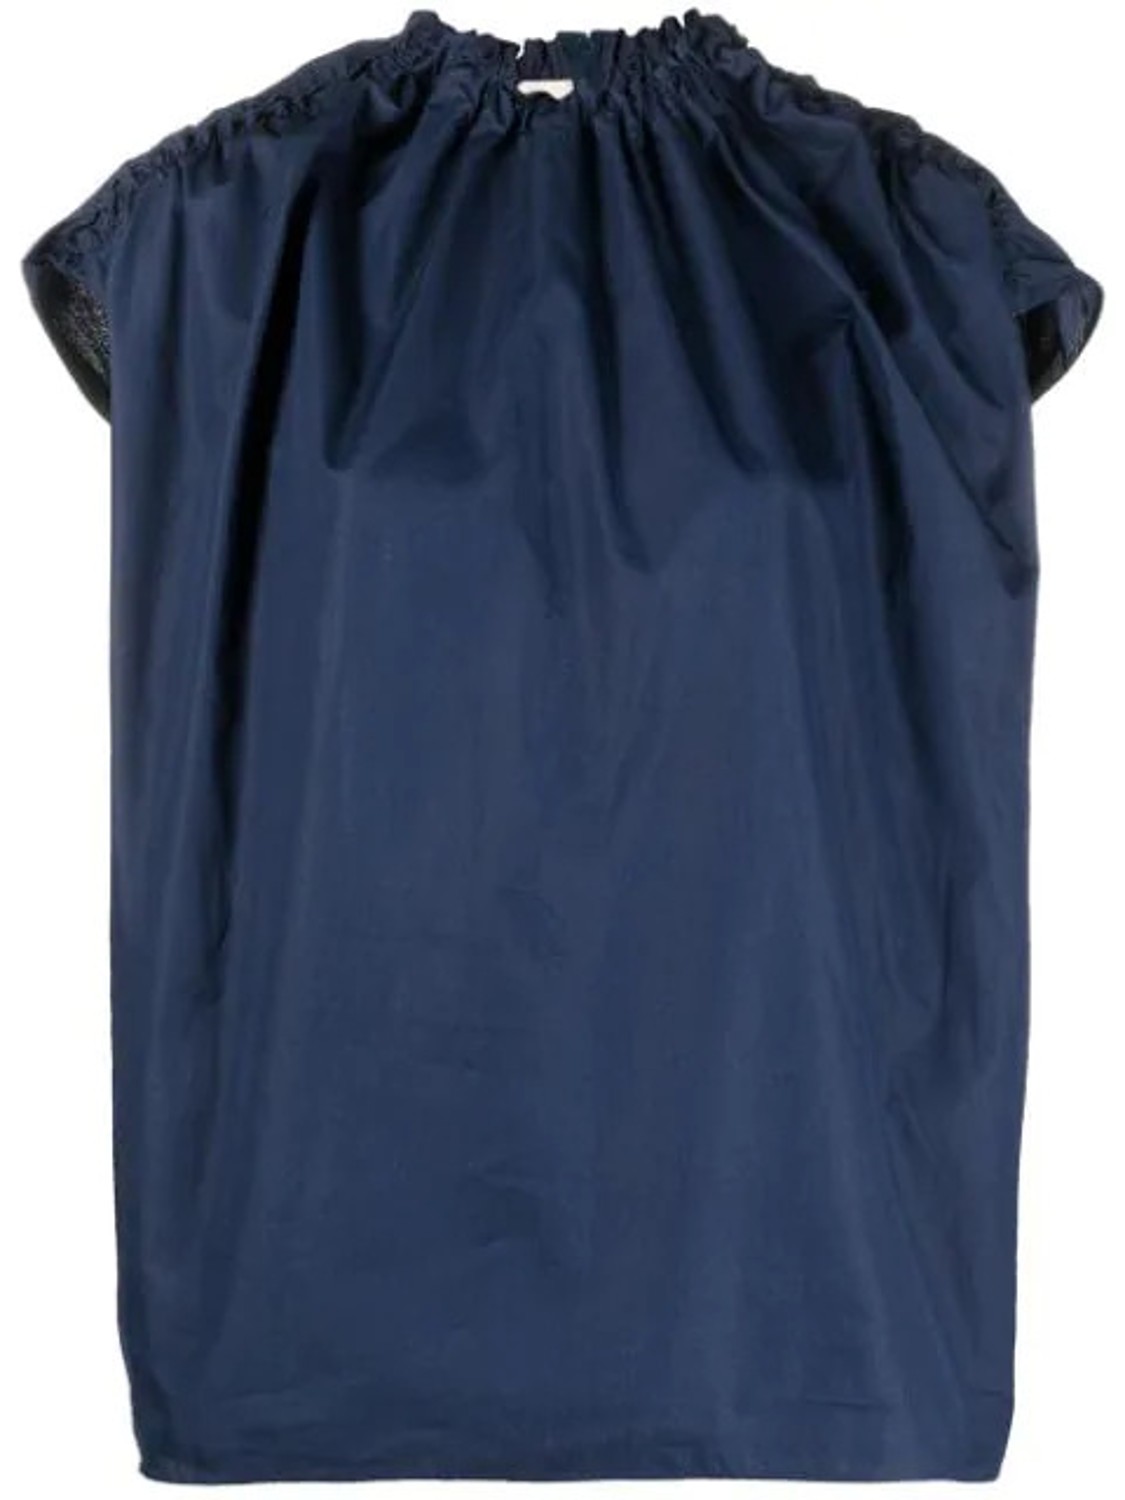 shop Marni Sales Tops: Tops Marni, girocollo, arricciato su collo e spalle, chiusura posteriore con zip, in colore blu.

Composizione: 100% cotone. number 2006